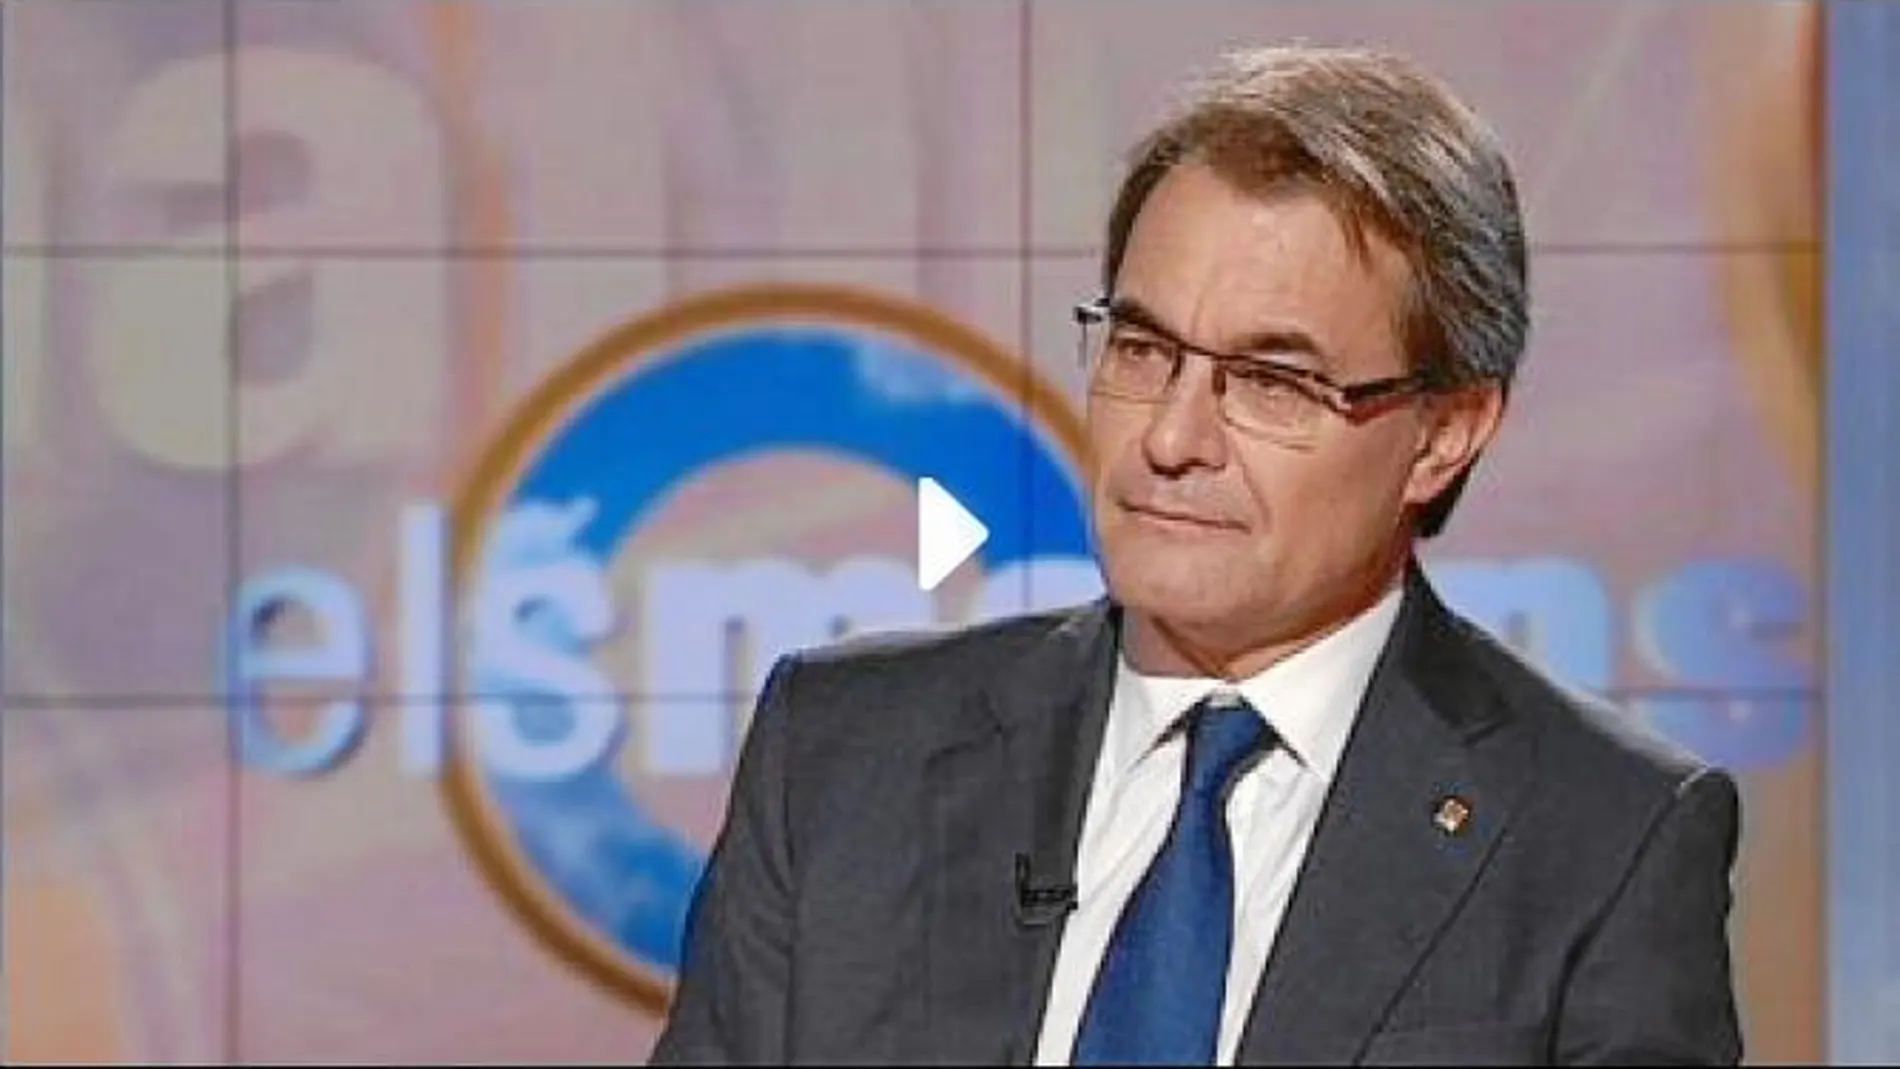 El president durante la entrevista en el programa «Àgora», en el fotograma de la izquierda, y en «Els Matins», a la derecha